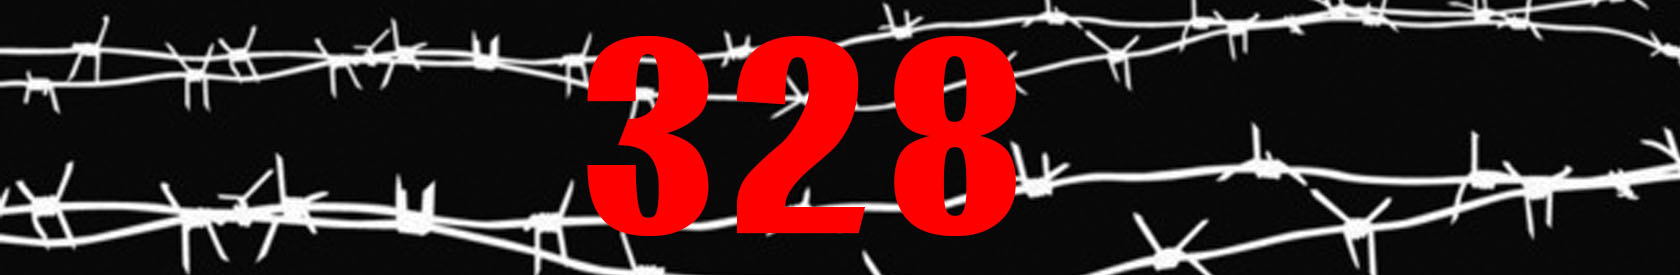 Monitoring über die Verletzungen der Rechte von Häftlingen: Selbstmord junger Häftlinge nach Artikel 328 des Strafgesetzbuches (Drogenartikel)